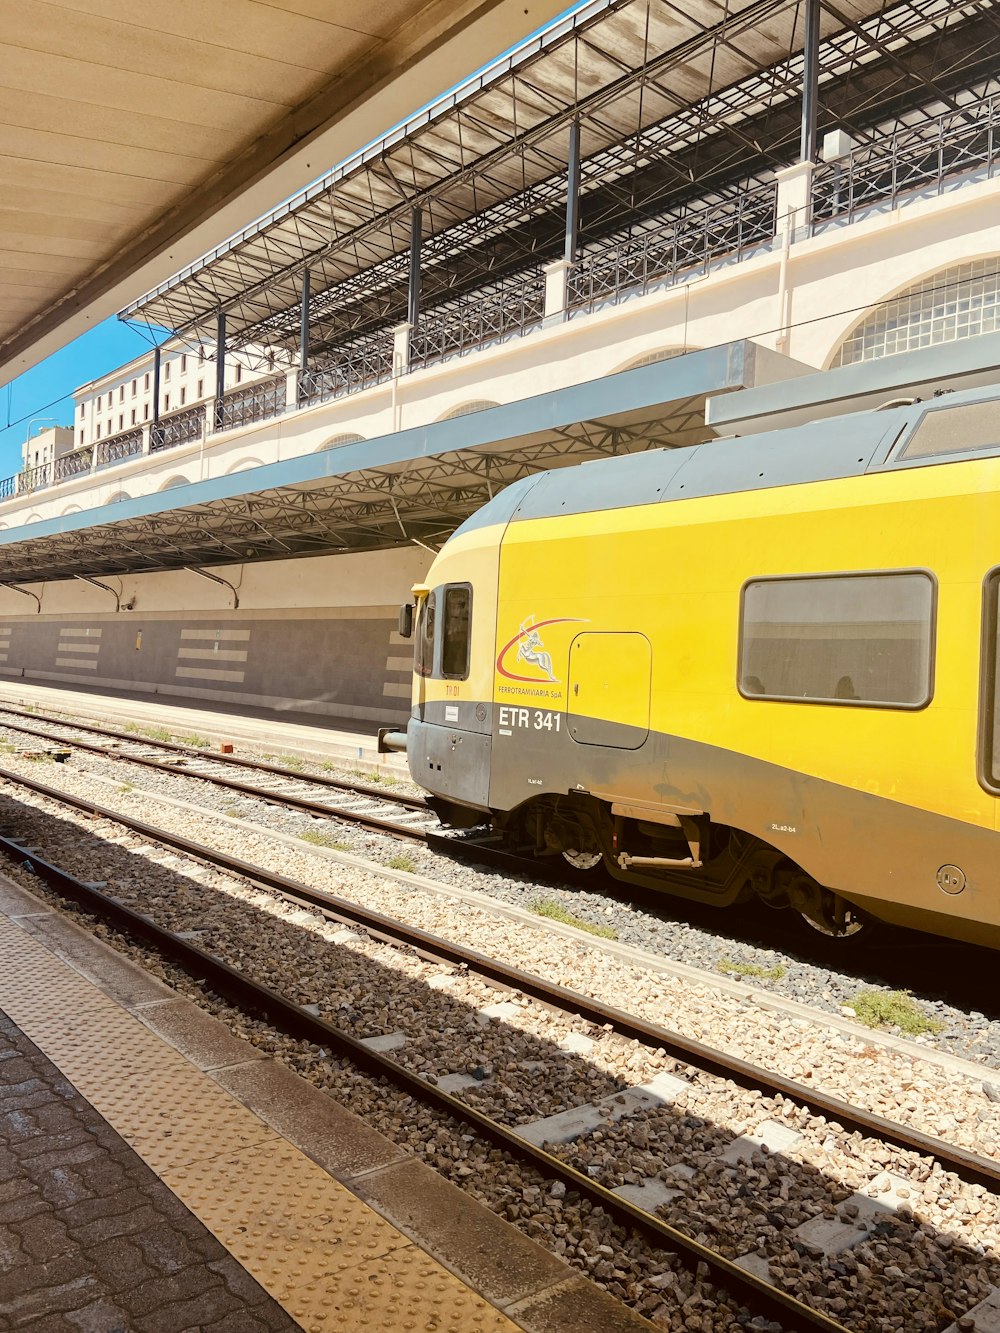 Un treno giallo che viaggia lungo i binari del treno vicino a una stazione ferroviaria